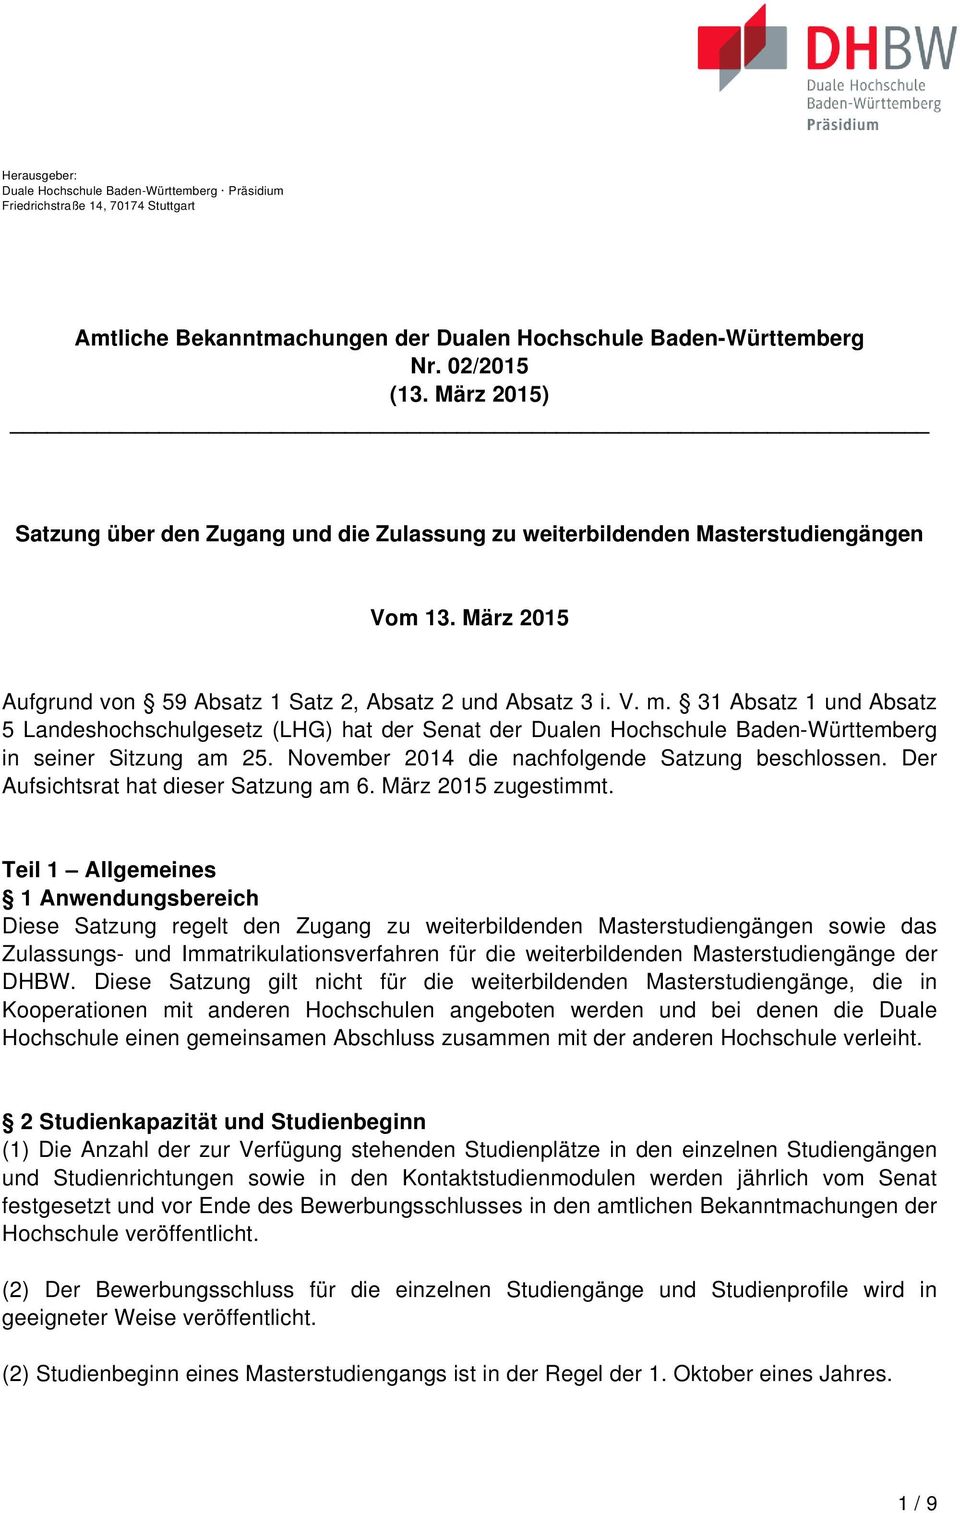 31 Absatz 1 und Absatz 5 Landeshochschulgesetz (LHG) hat der Senat der Dualen Hochschule Baden-Württemberg in seiner Sitzung am 25. November 2014 die nachfolgende Satzung beschlossen.